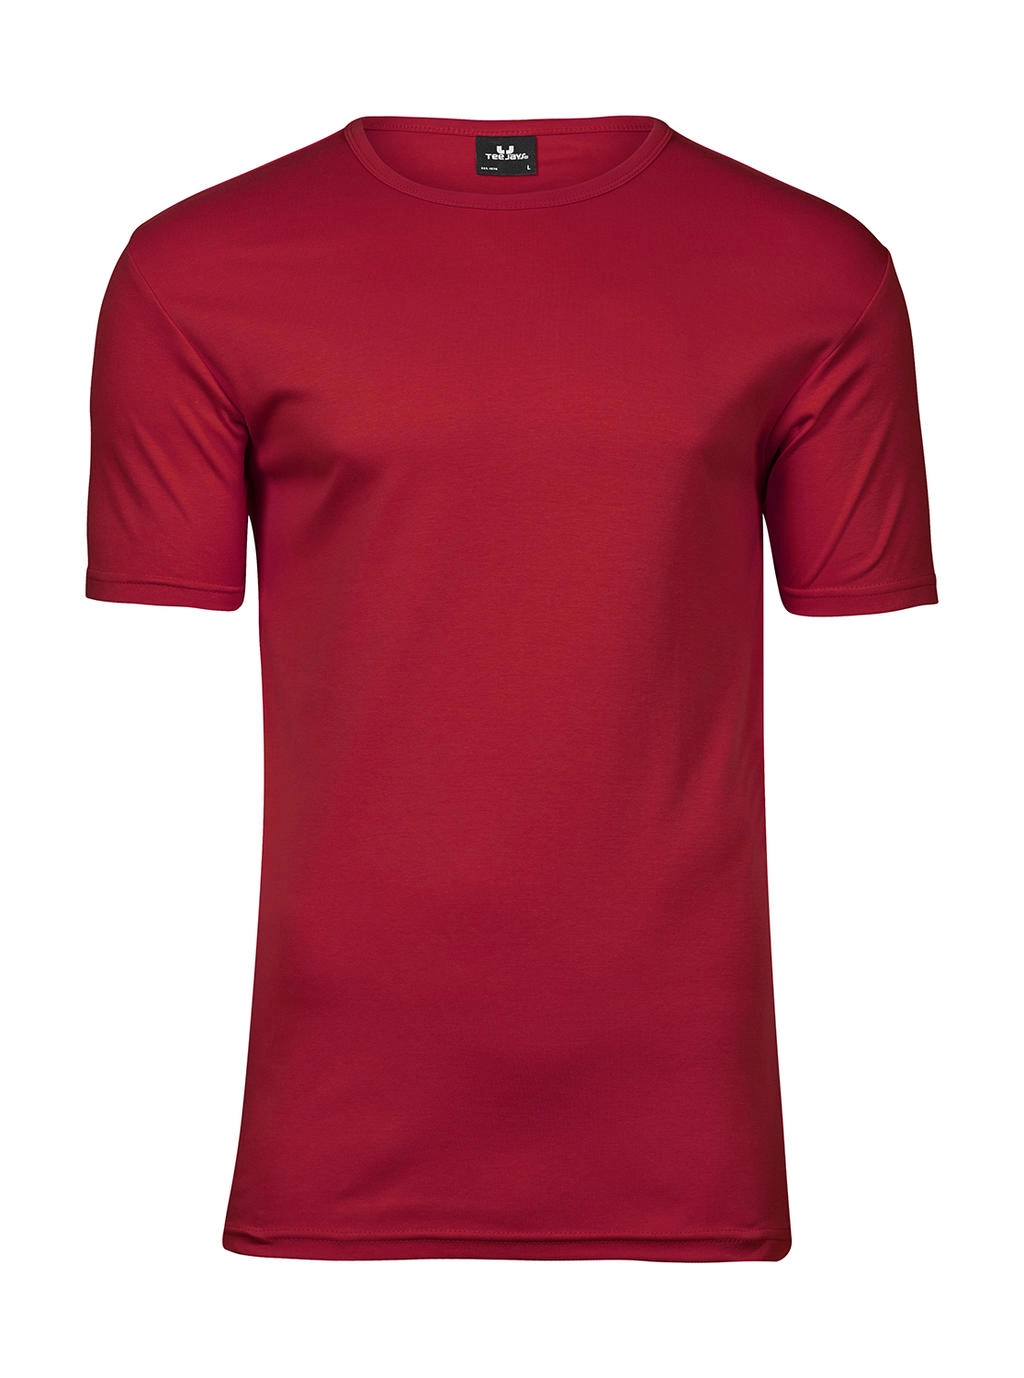 Men`s Interlock T-Shirt zum Besticken und Bedrucken in der Farbe Deep Red mit Ihren Logo, Schriftzug oder Motiv.